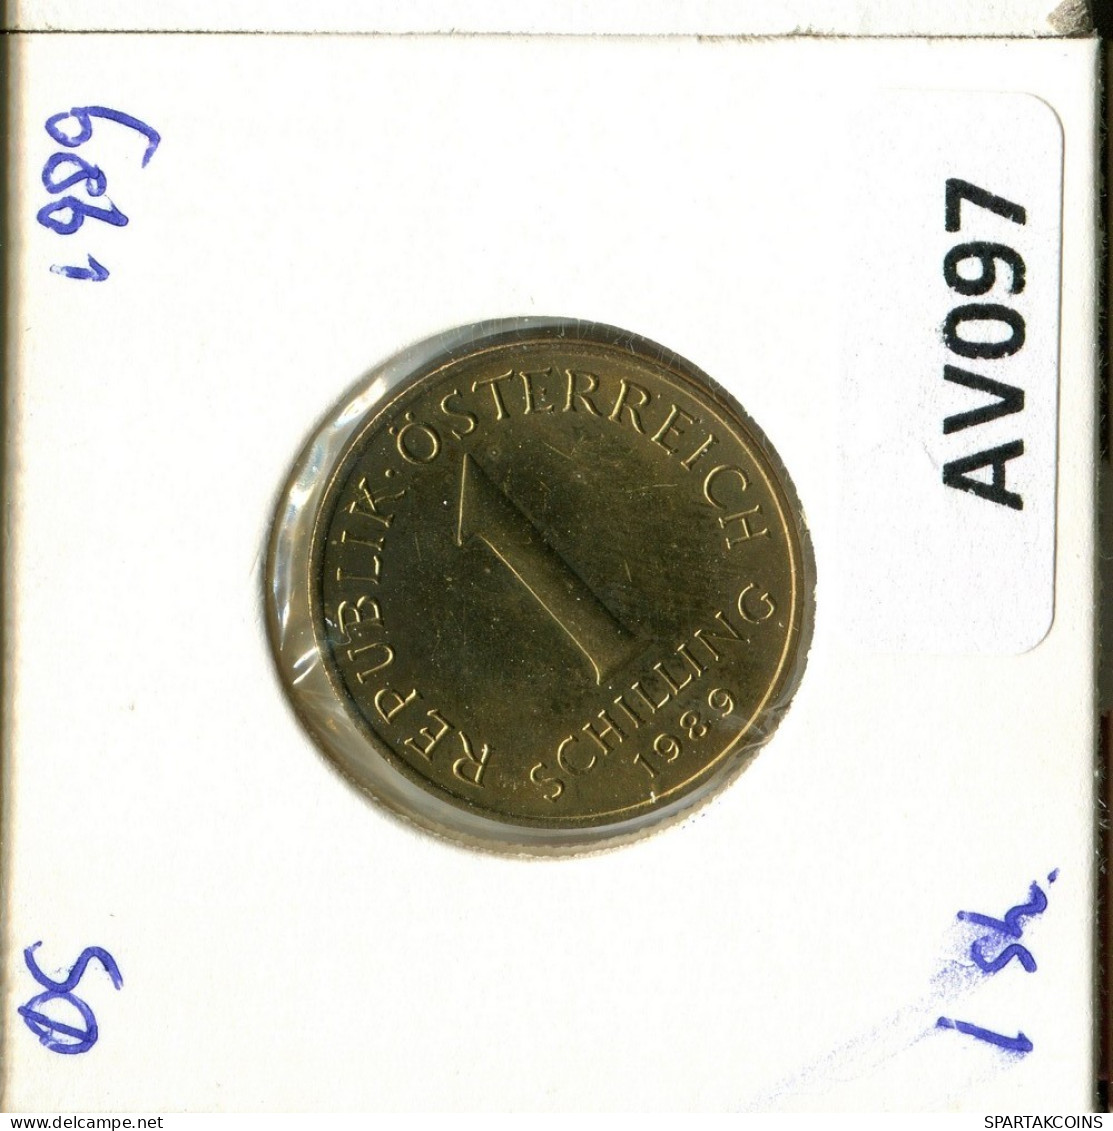 1 SCHILLING 1989 AUSTRIA Coin #AV097.U.A - Oesterreich